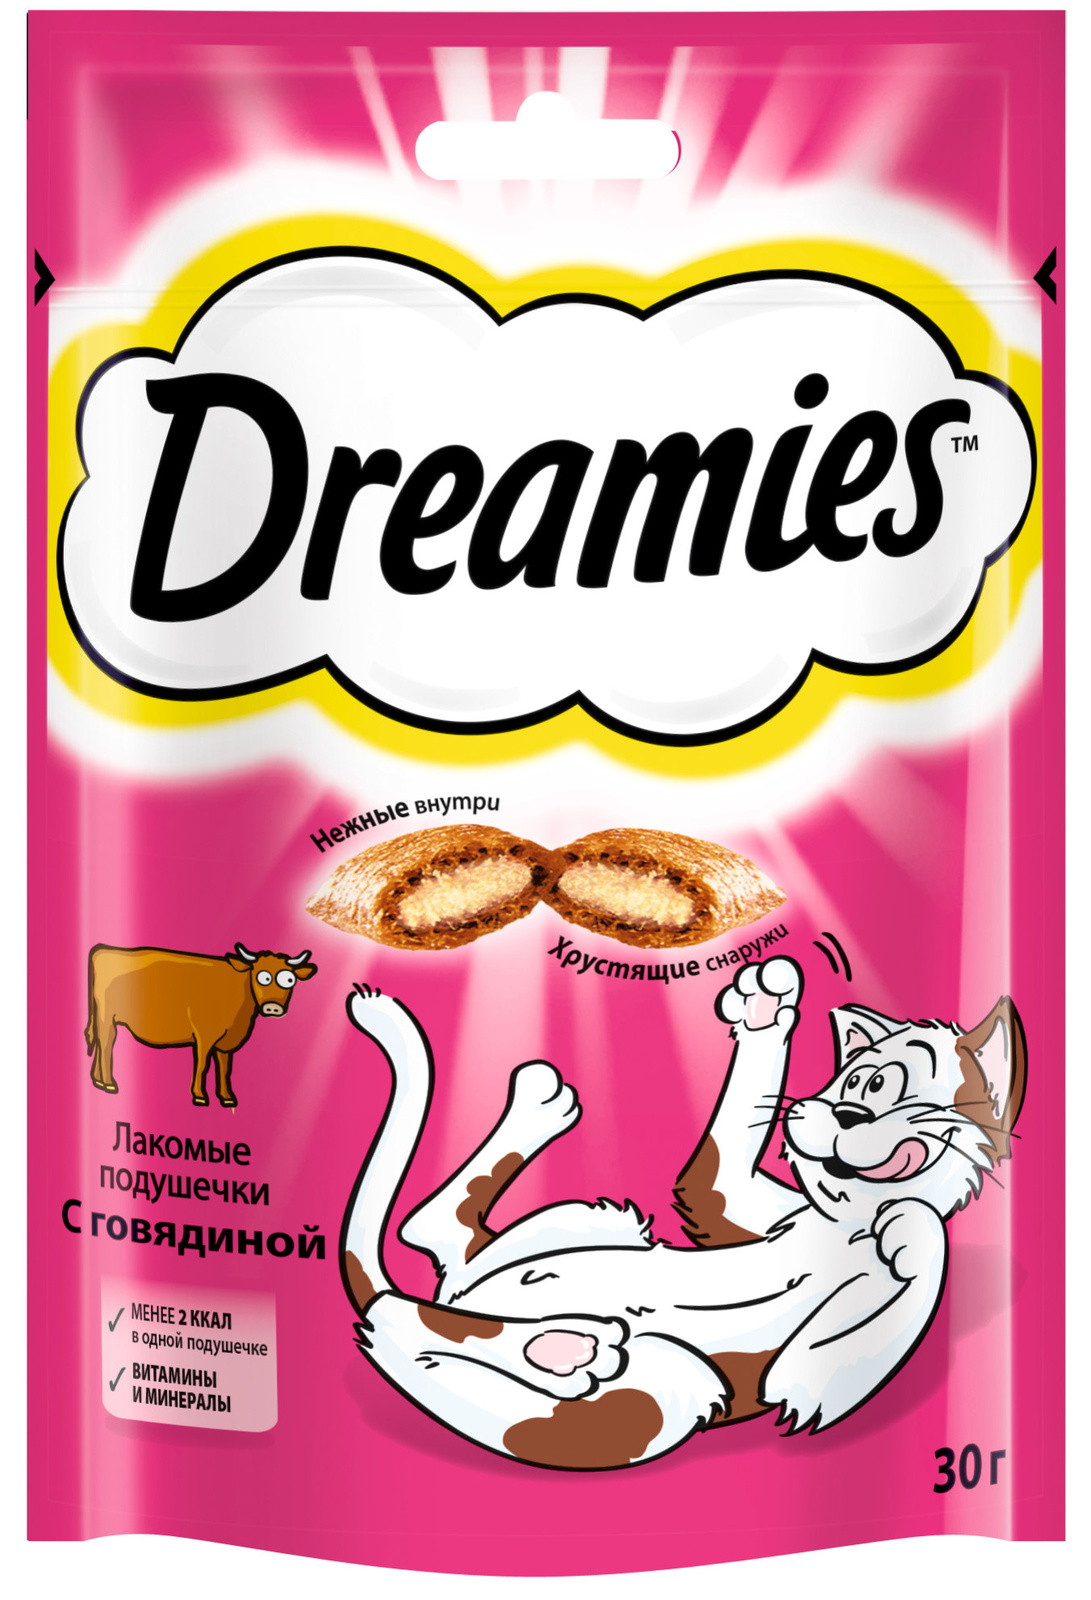 Dreamies Dreamies лакомство для кошек Dreamies подушечки с говядиной (140 г) лакомство для кошек dreamies с индейкой 140 г 5 шт